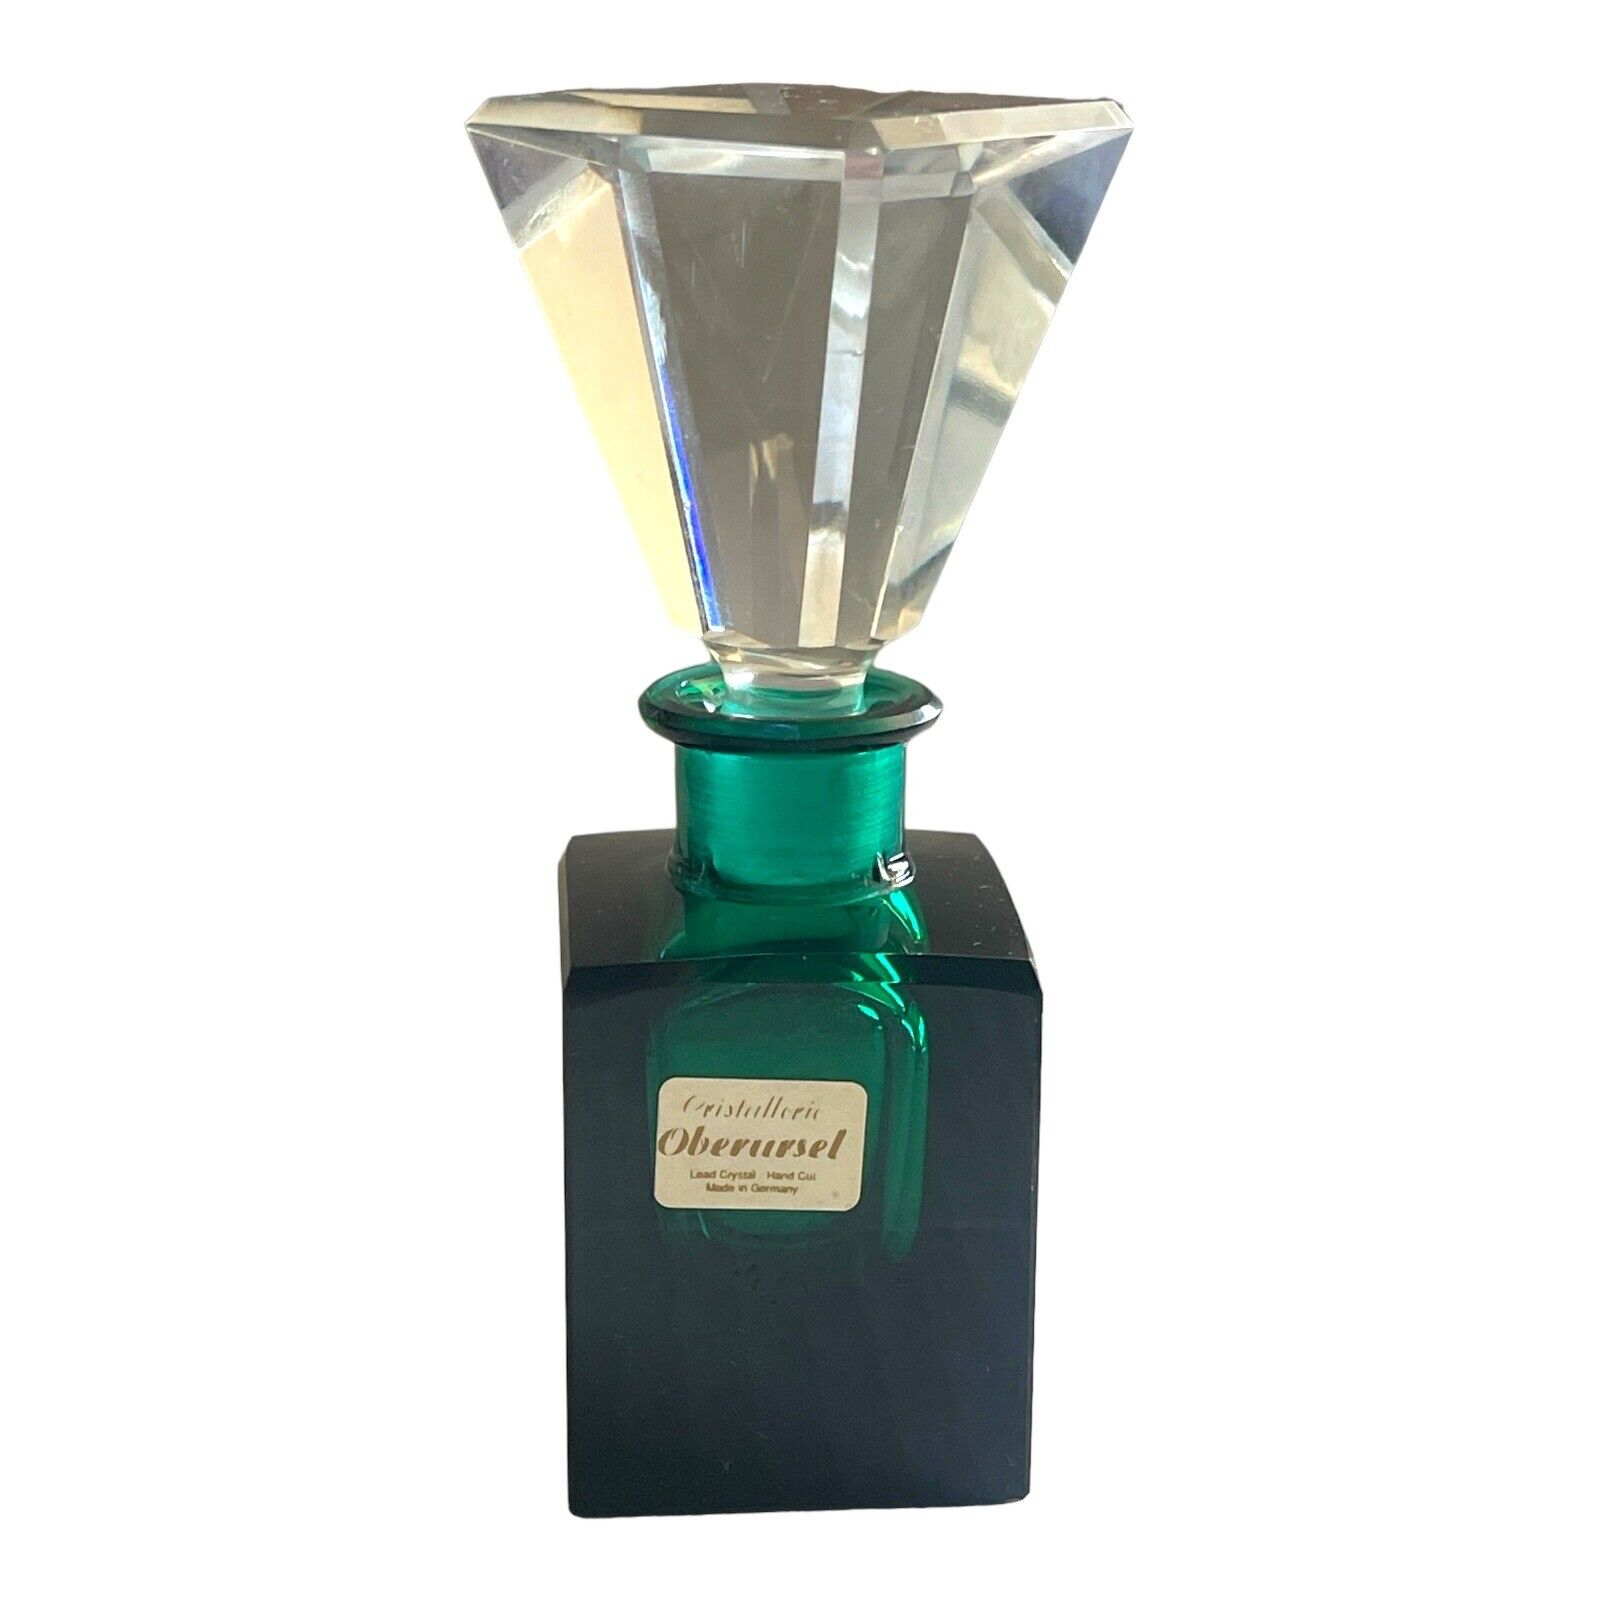 Cristallerie Oberursel Perfume Bottle Stopper Lead Crystal Germany Green Empty